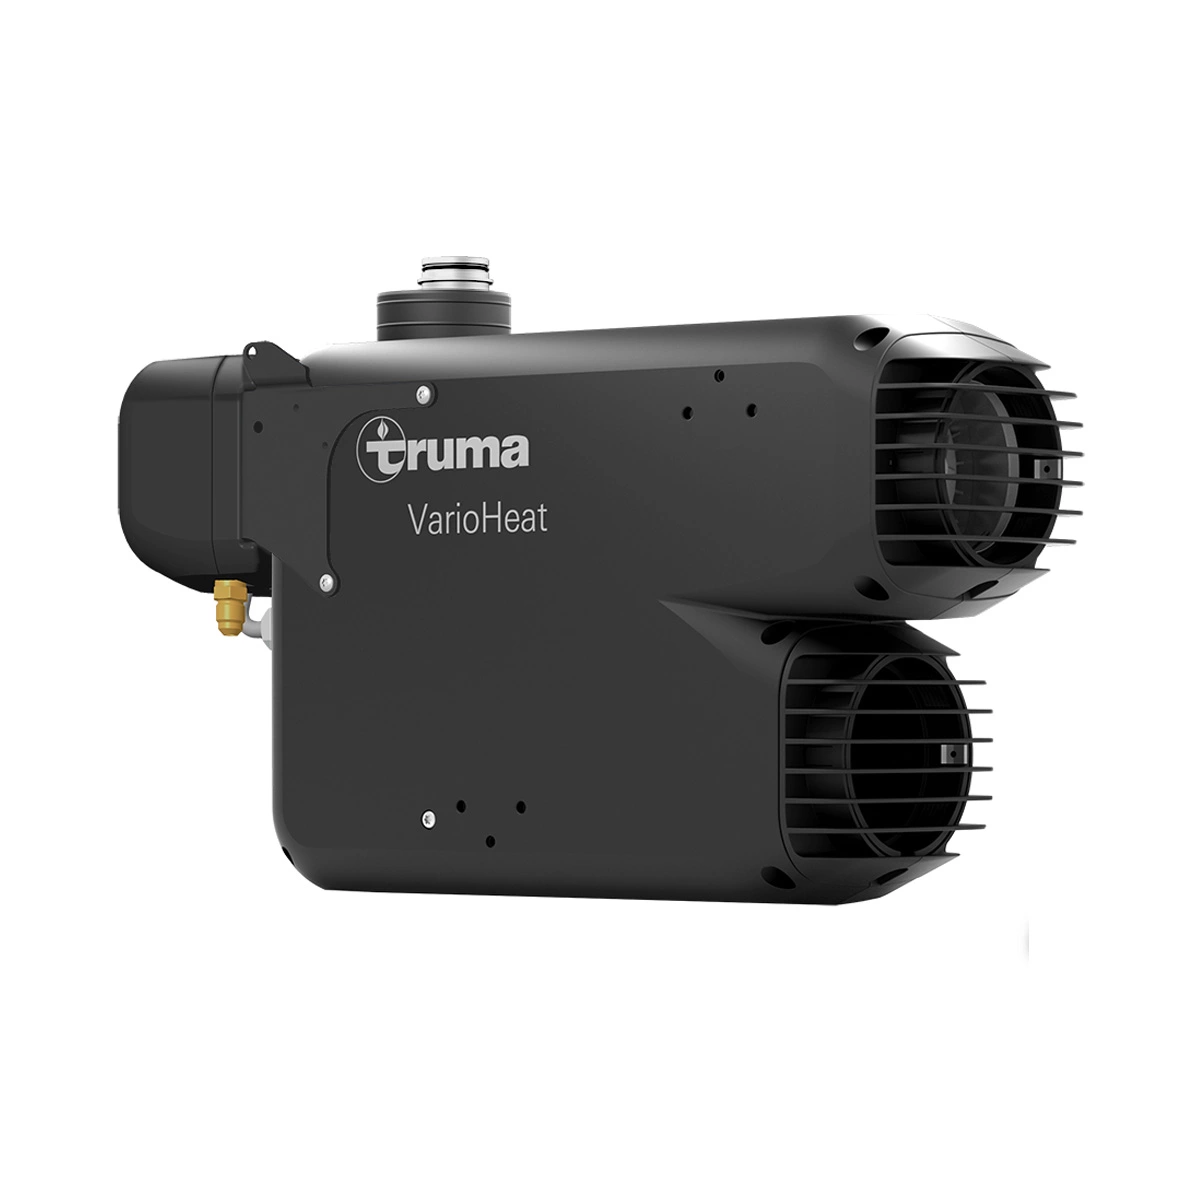 Truma VarioHeat comfort CP plus - 12 V - power 3700 W, Truma Heater, Truma  Heating, Camping Heater, Camping Fridge, Camping Air Conditioner, Camping  Accessories